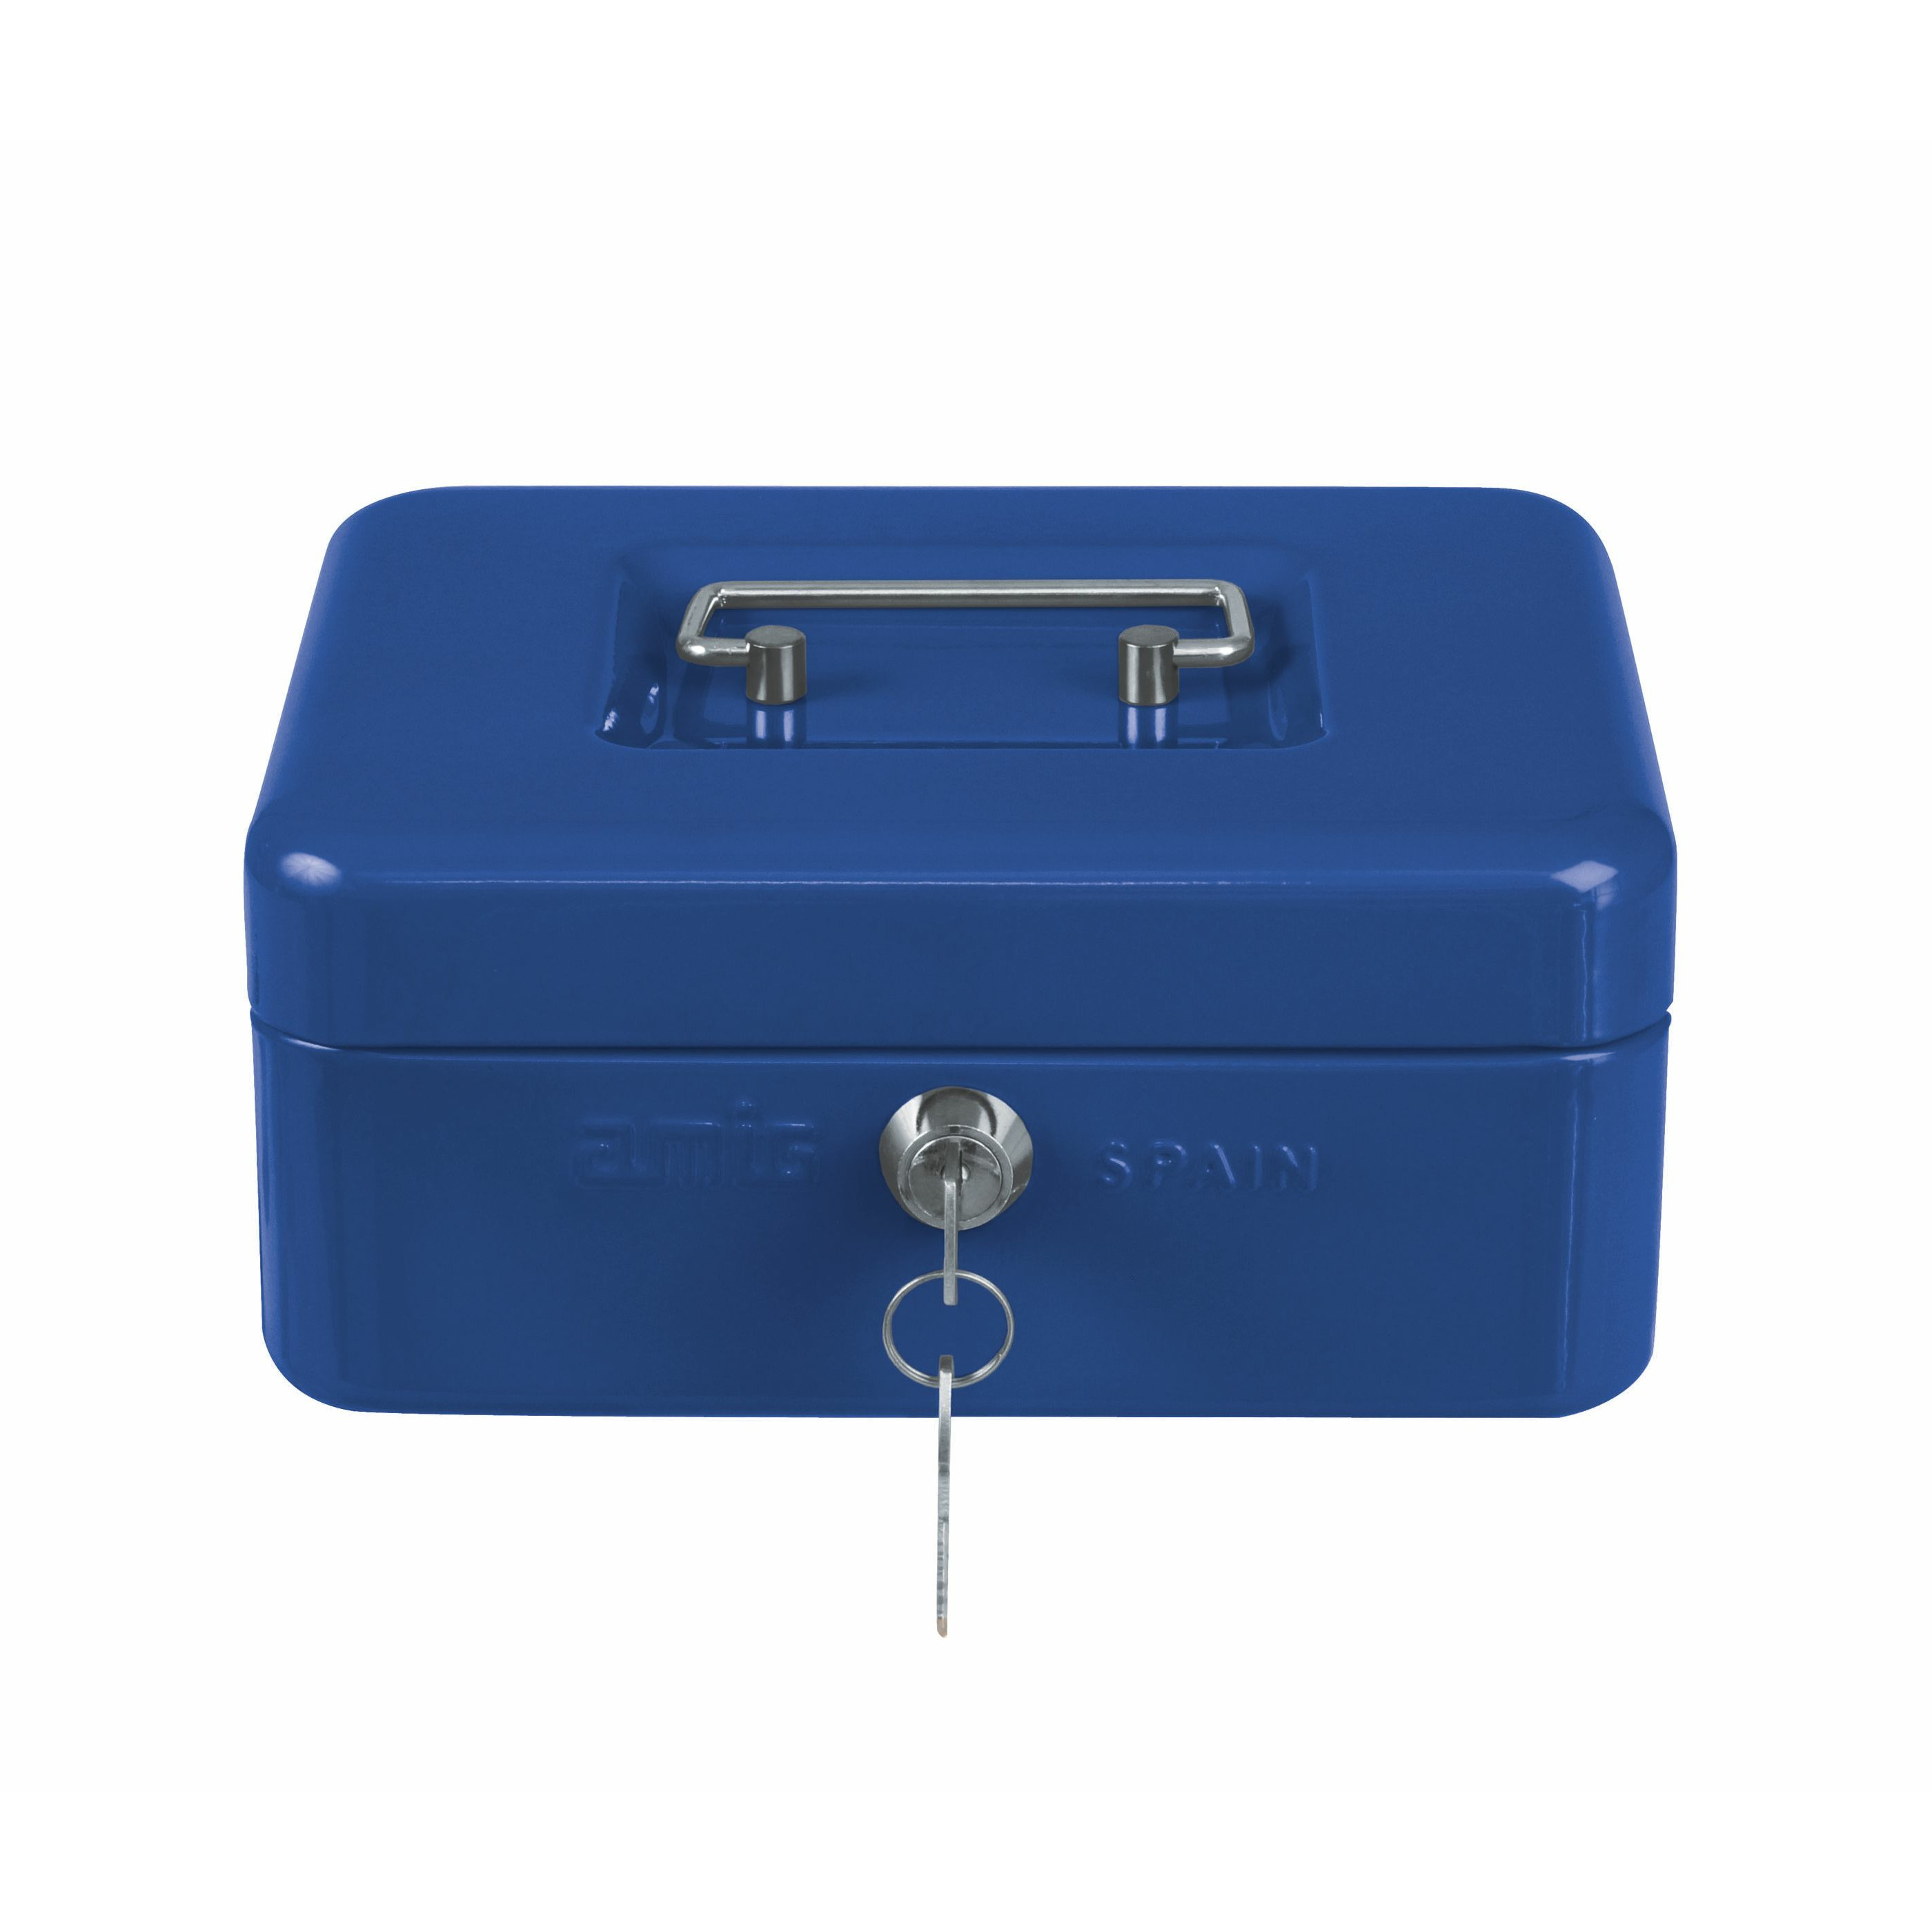 Geldkistje met 2 sleutels blauw staal muntbakje 20 x 16 x 9 cm inbraakbeveiliging